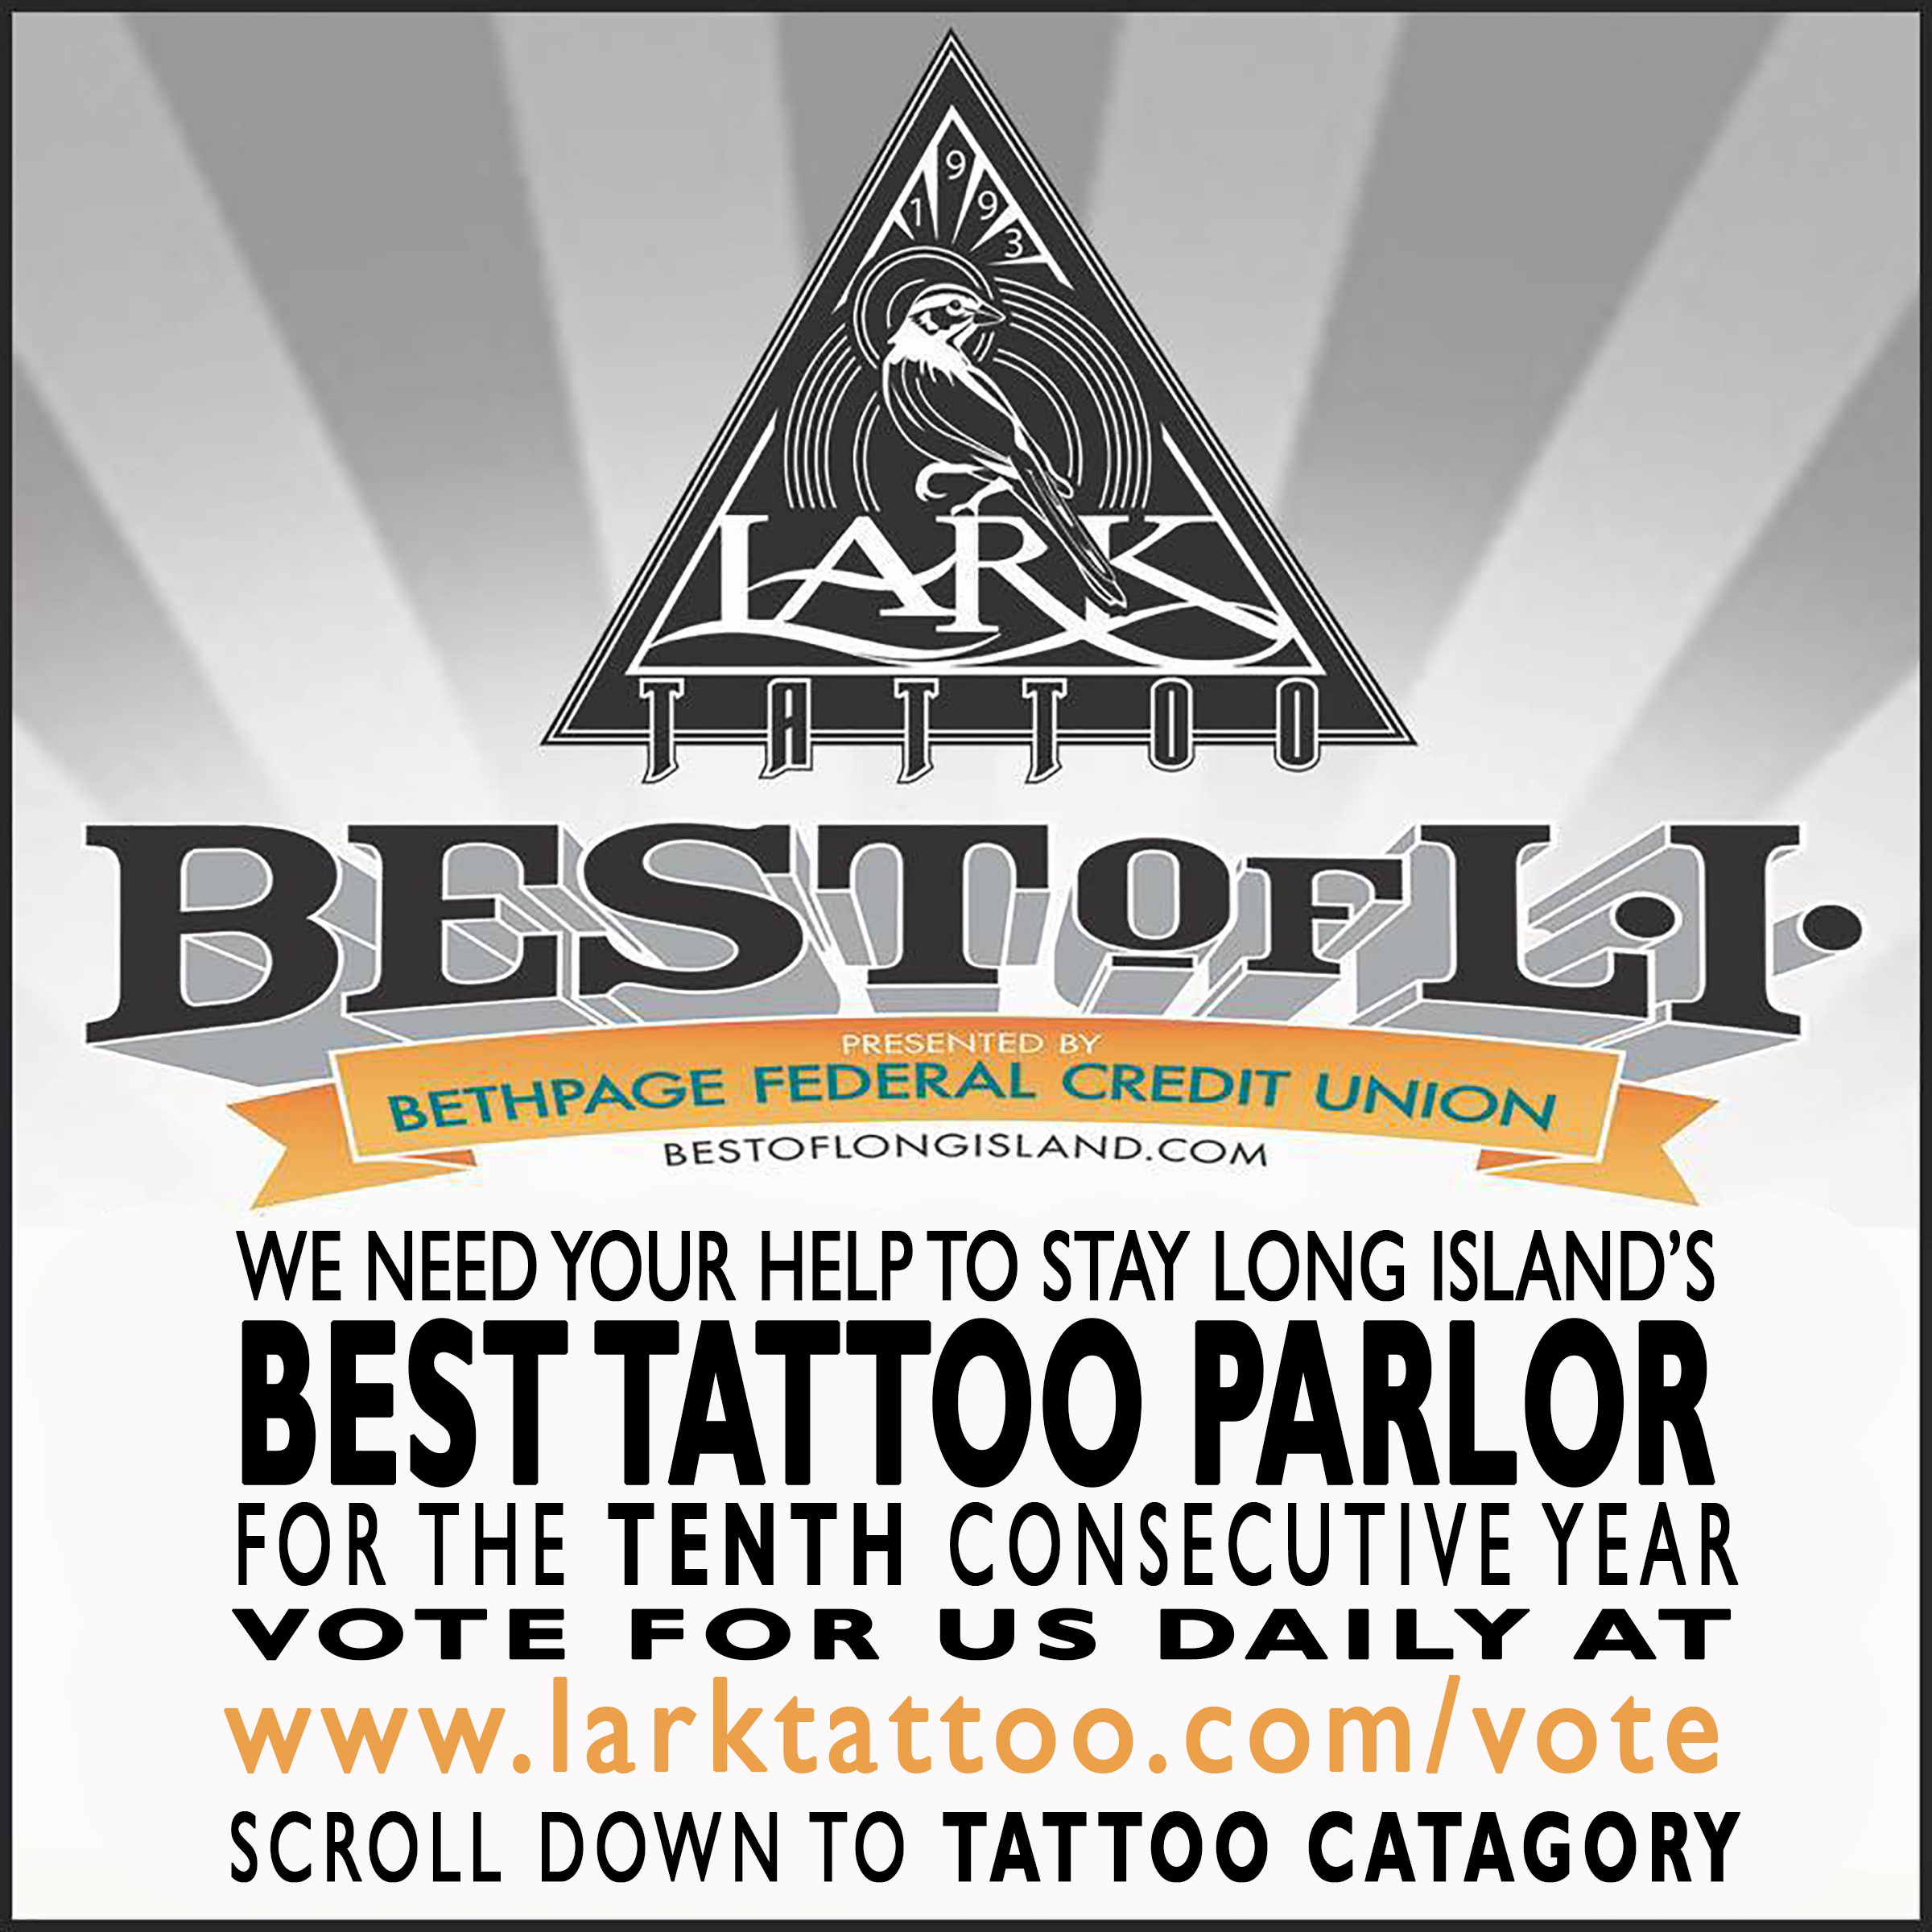 LarkTattoo, WeNeedYourHelp, Vote, Voting, VoteForUs, BestOfLongIsland, BestOfLI, BoLI, Tattoo, Tattoos, Tattooist, Tattooed, TattooParlor, BestTattooParlor, LongIslandBestTattooParlor, LongIsland, NY, NewYork, Westbury, TattooShop, BestTattooShop